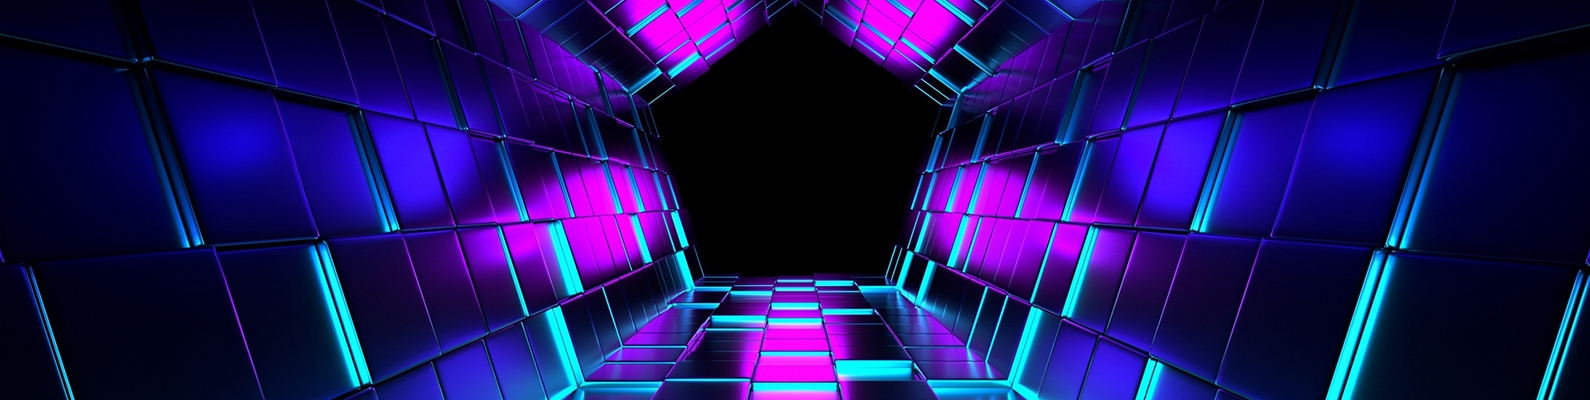 кубы, рендеринг, туннель, пурпурный картинки